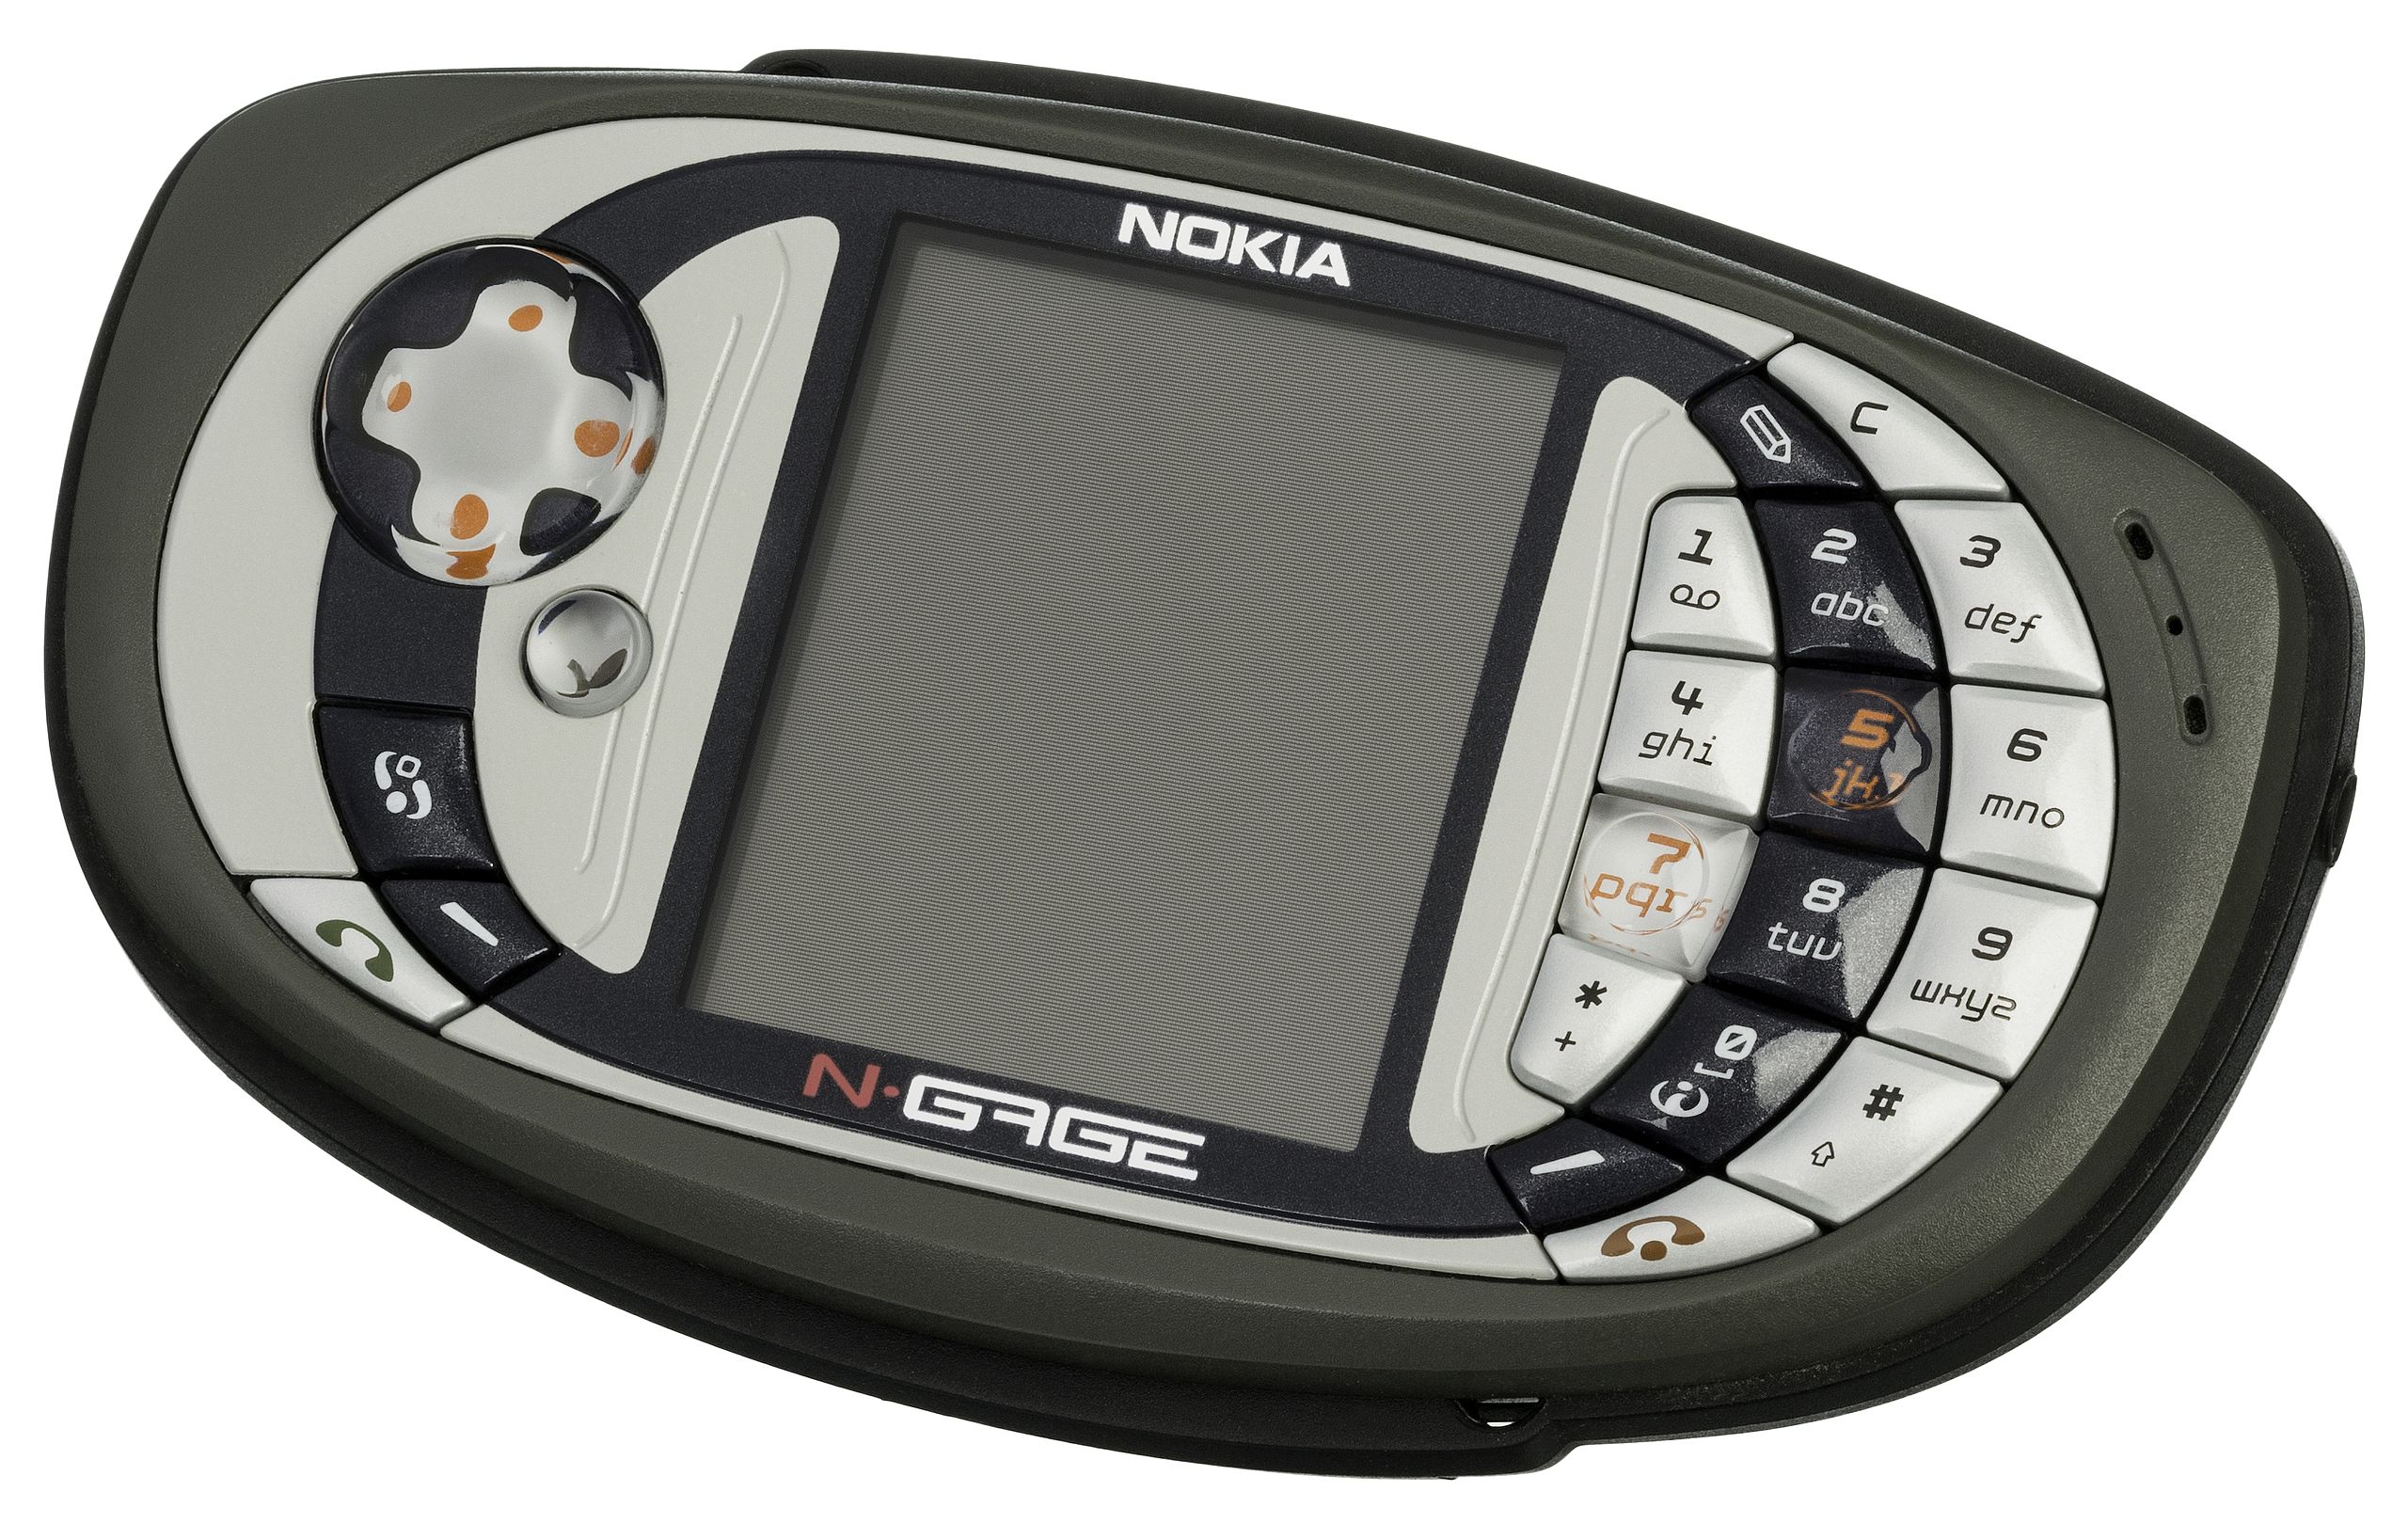 Nokia N-Gage (2004) thiết kế Nokia kỳ lạ